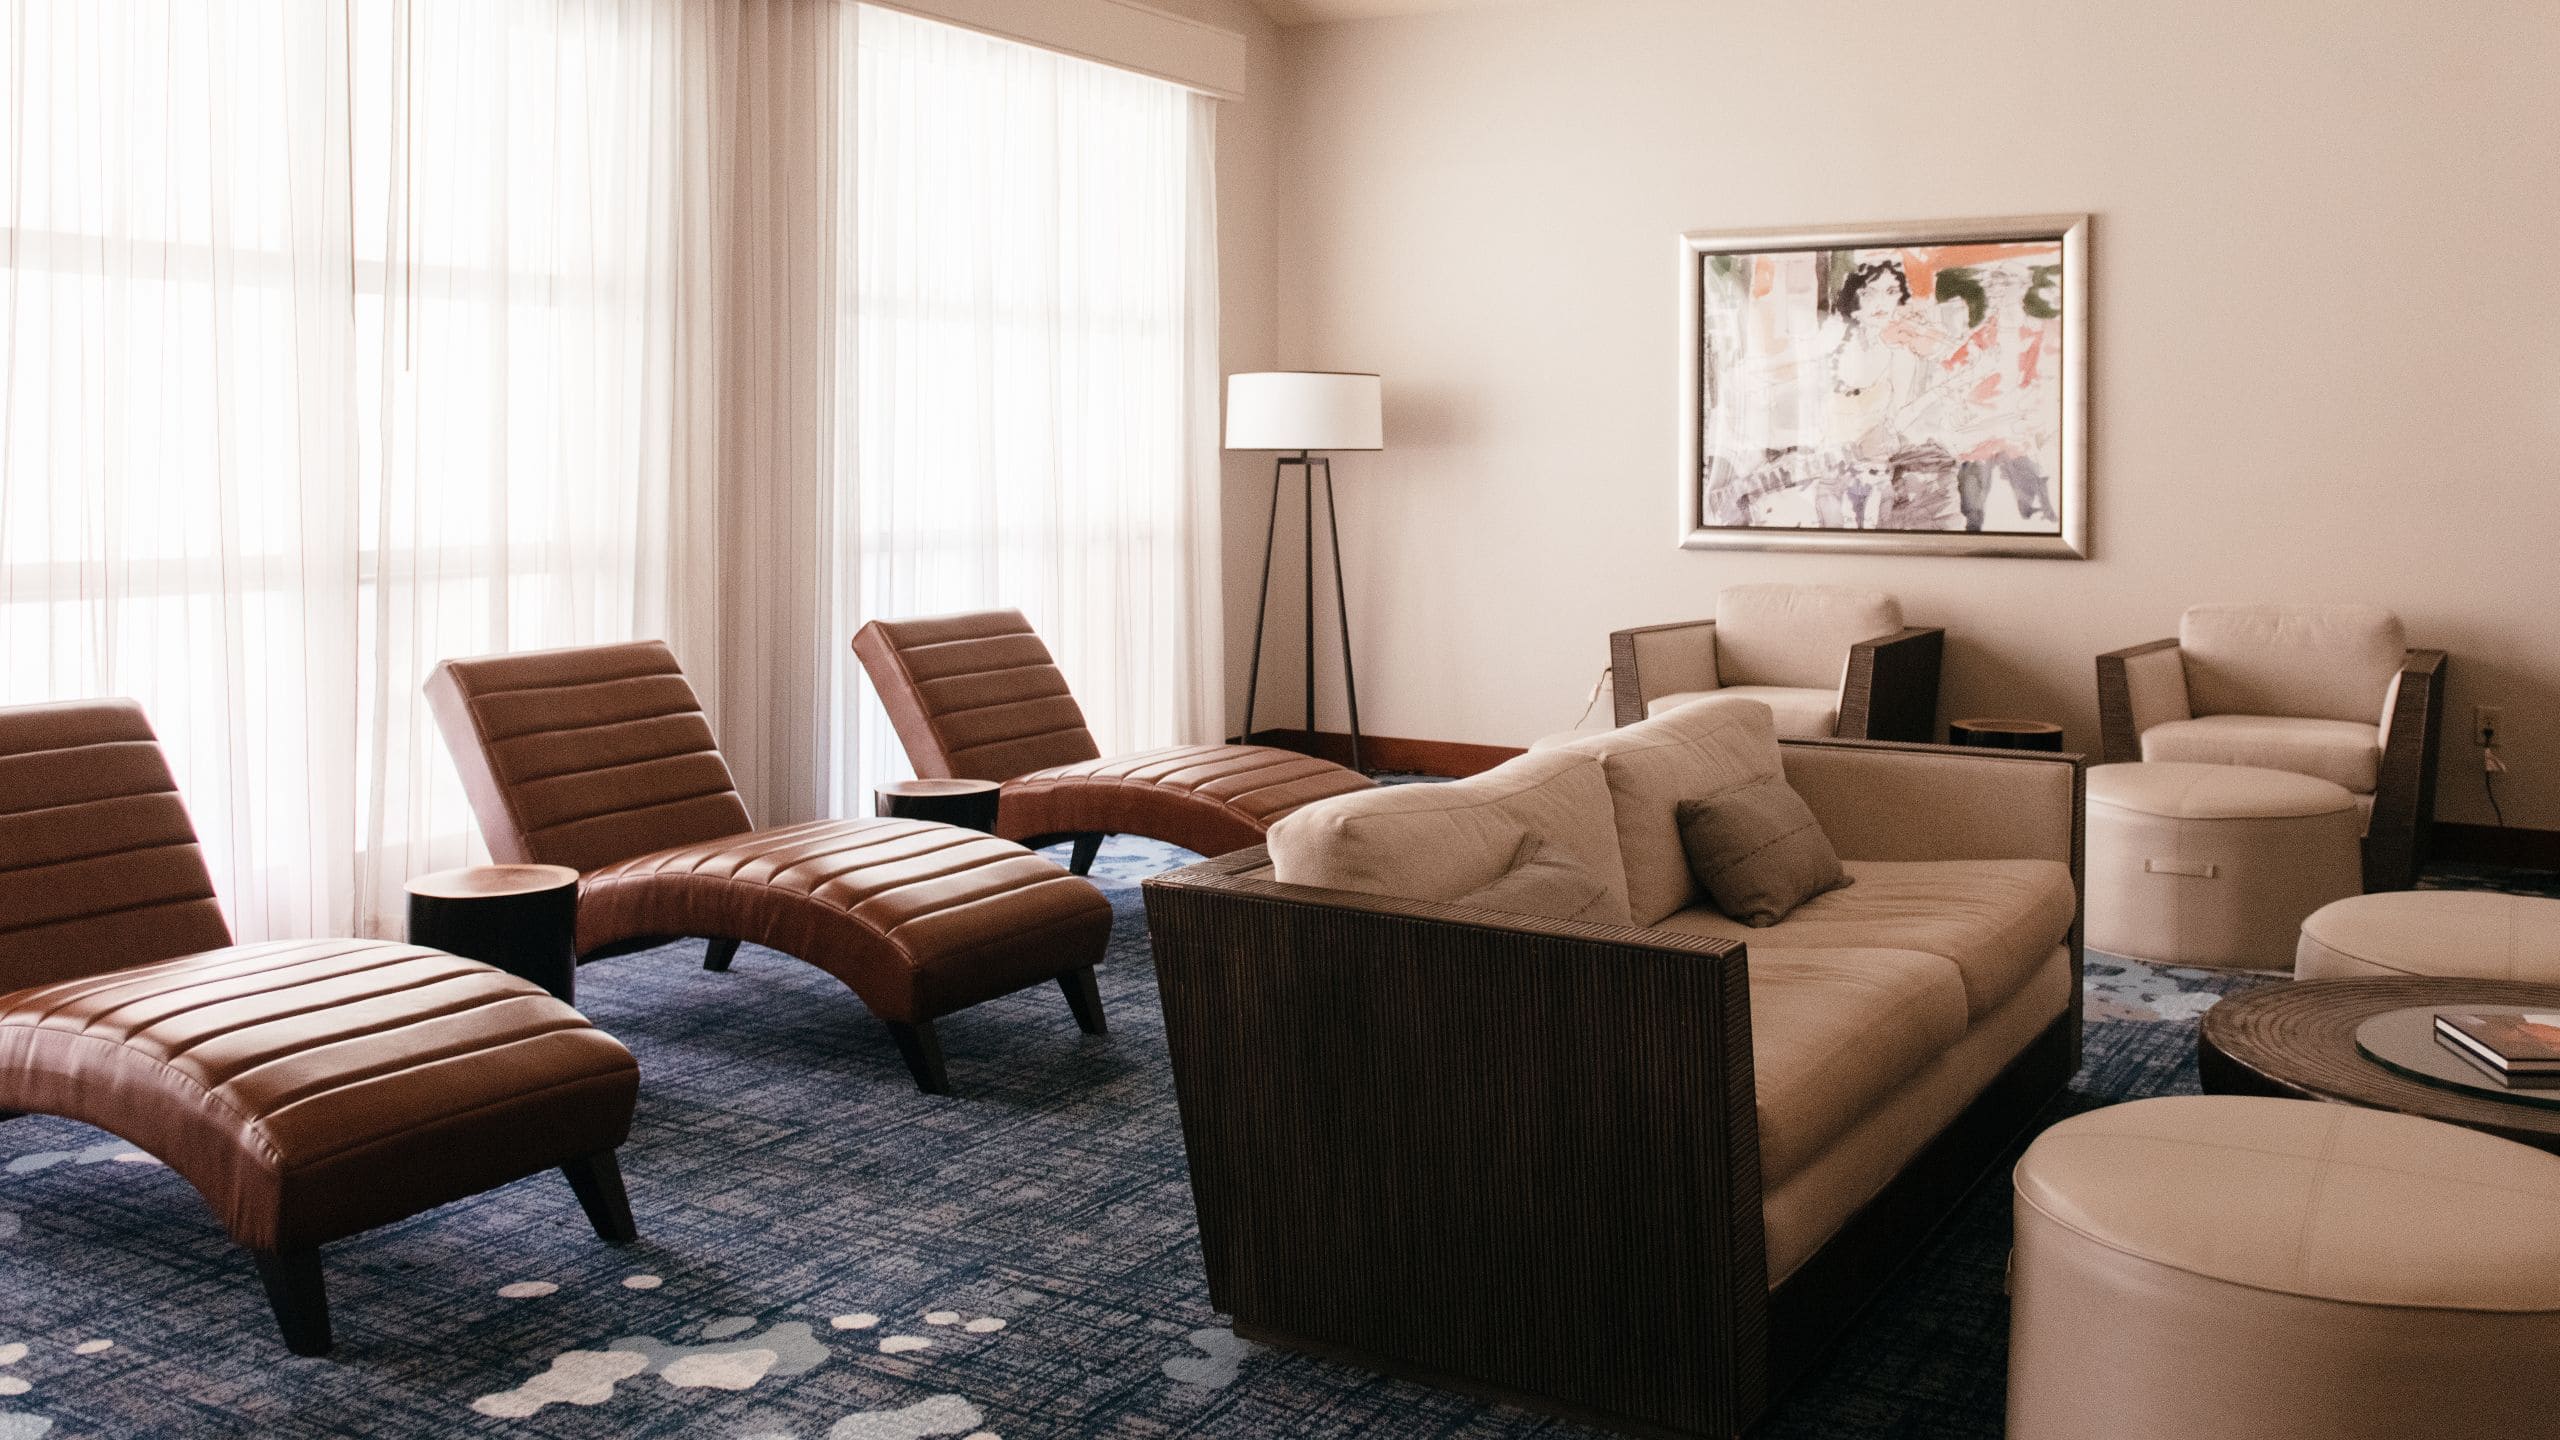 Hyatt Regency Lost Pines Resort and Spa Spa Interior Relaxation Room